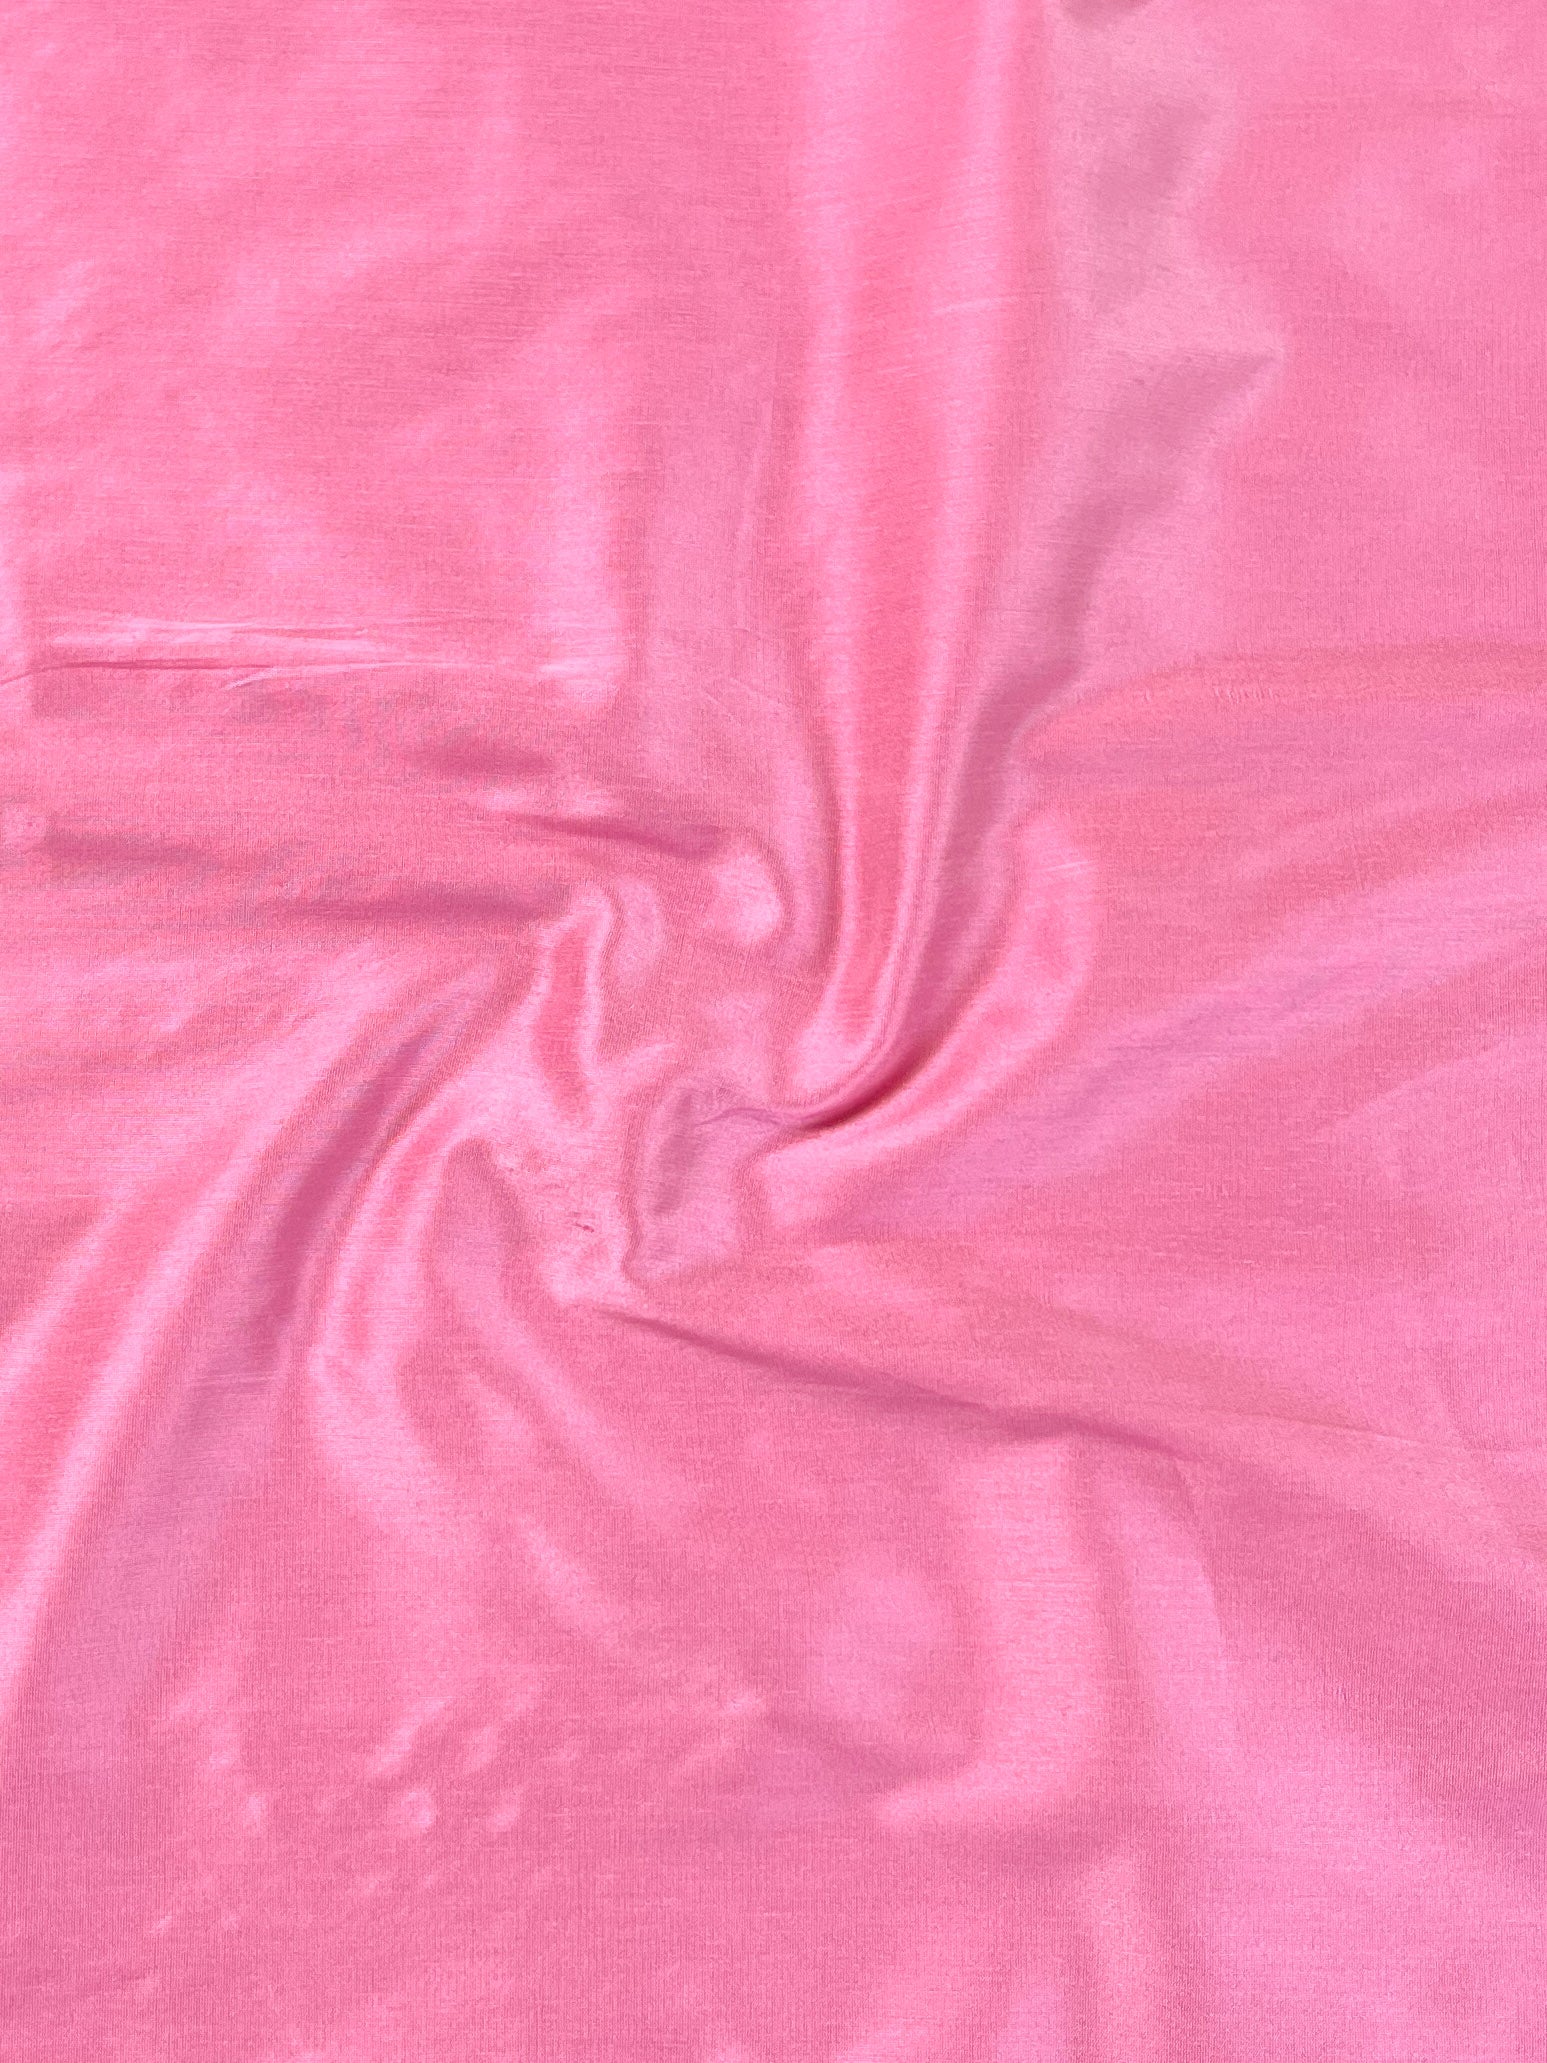 Banarasee Handloom Chanderi Salwar Kameez Fabric With Meena & Zari Design-Pink